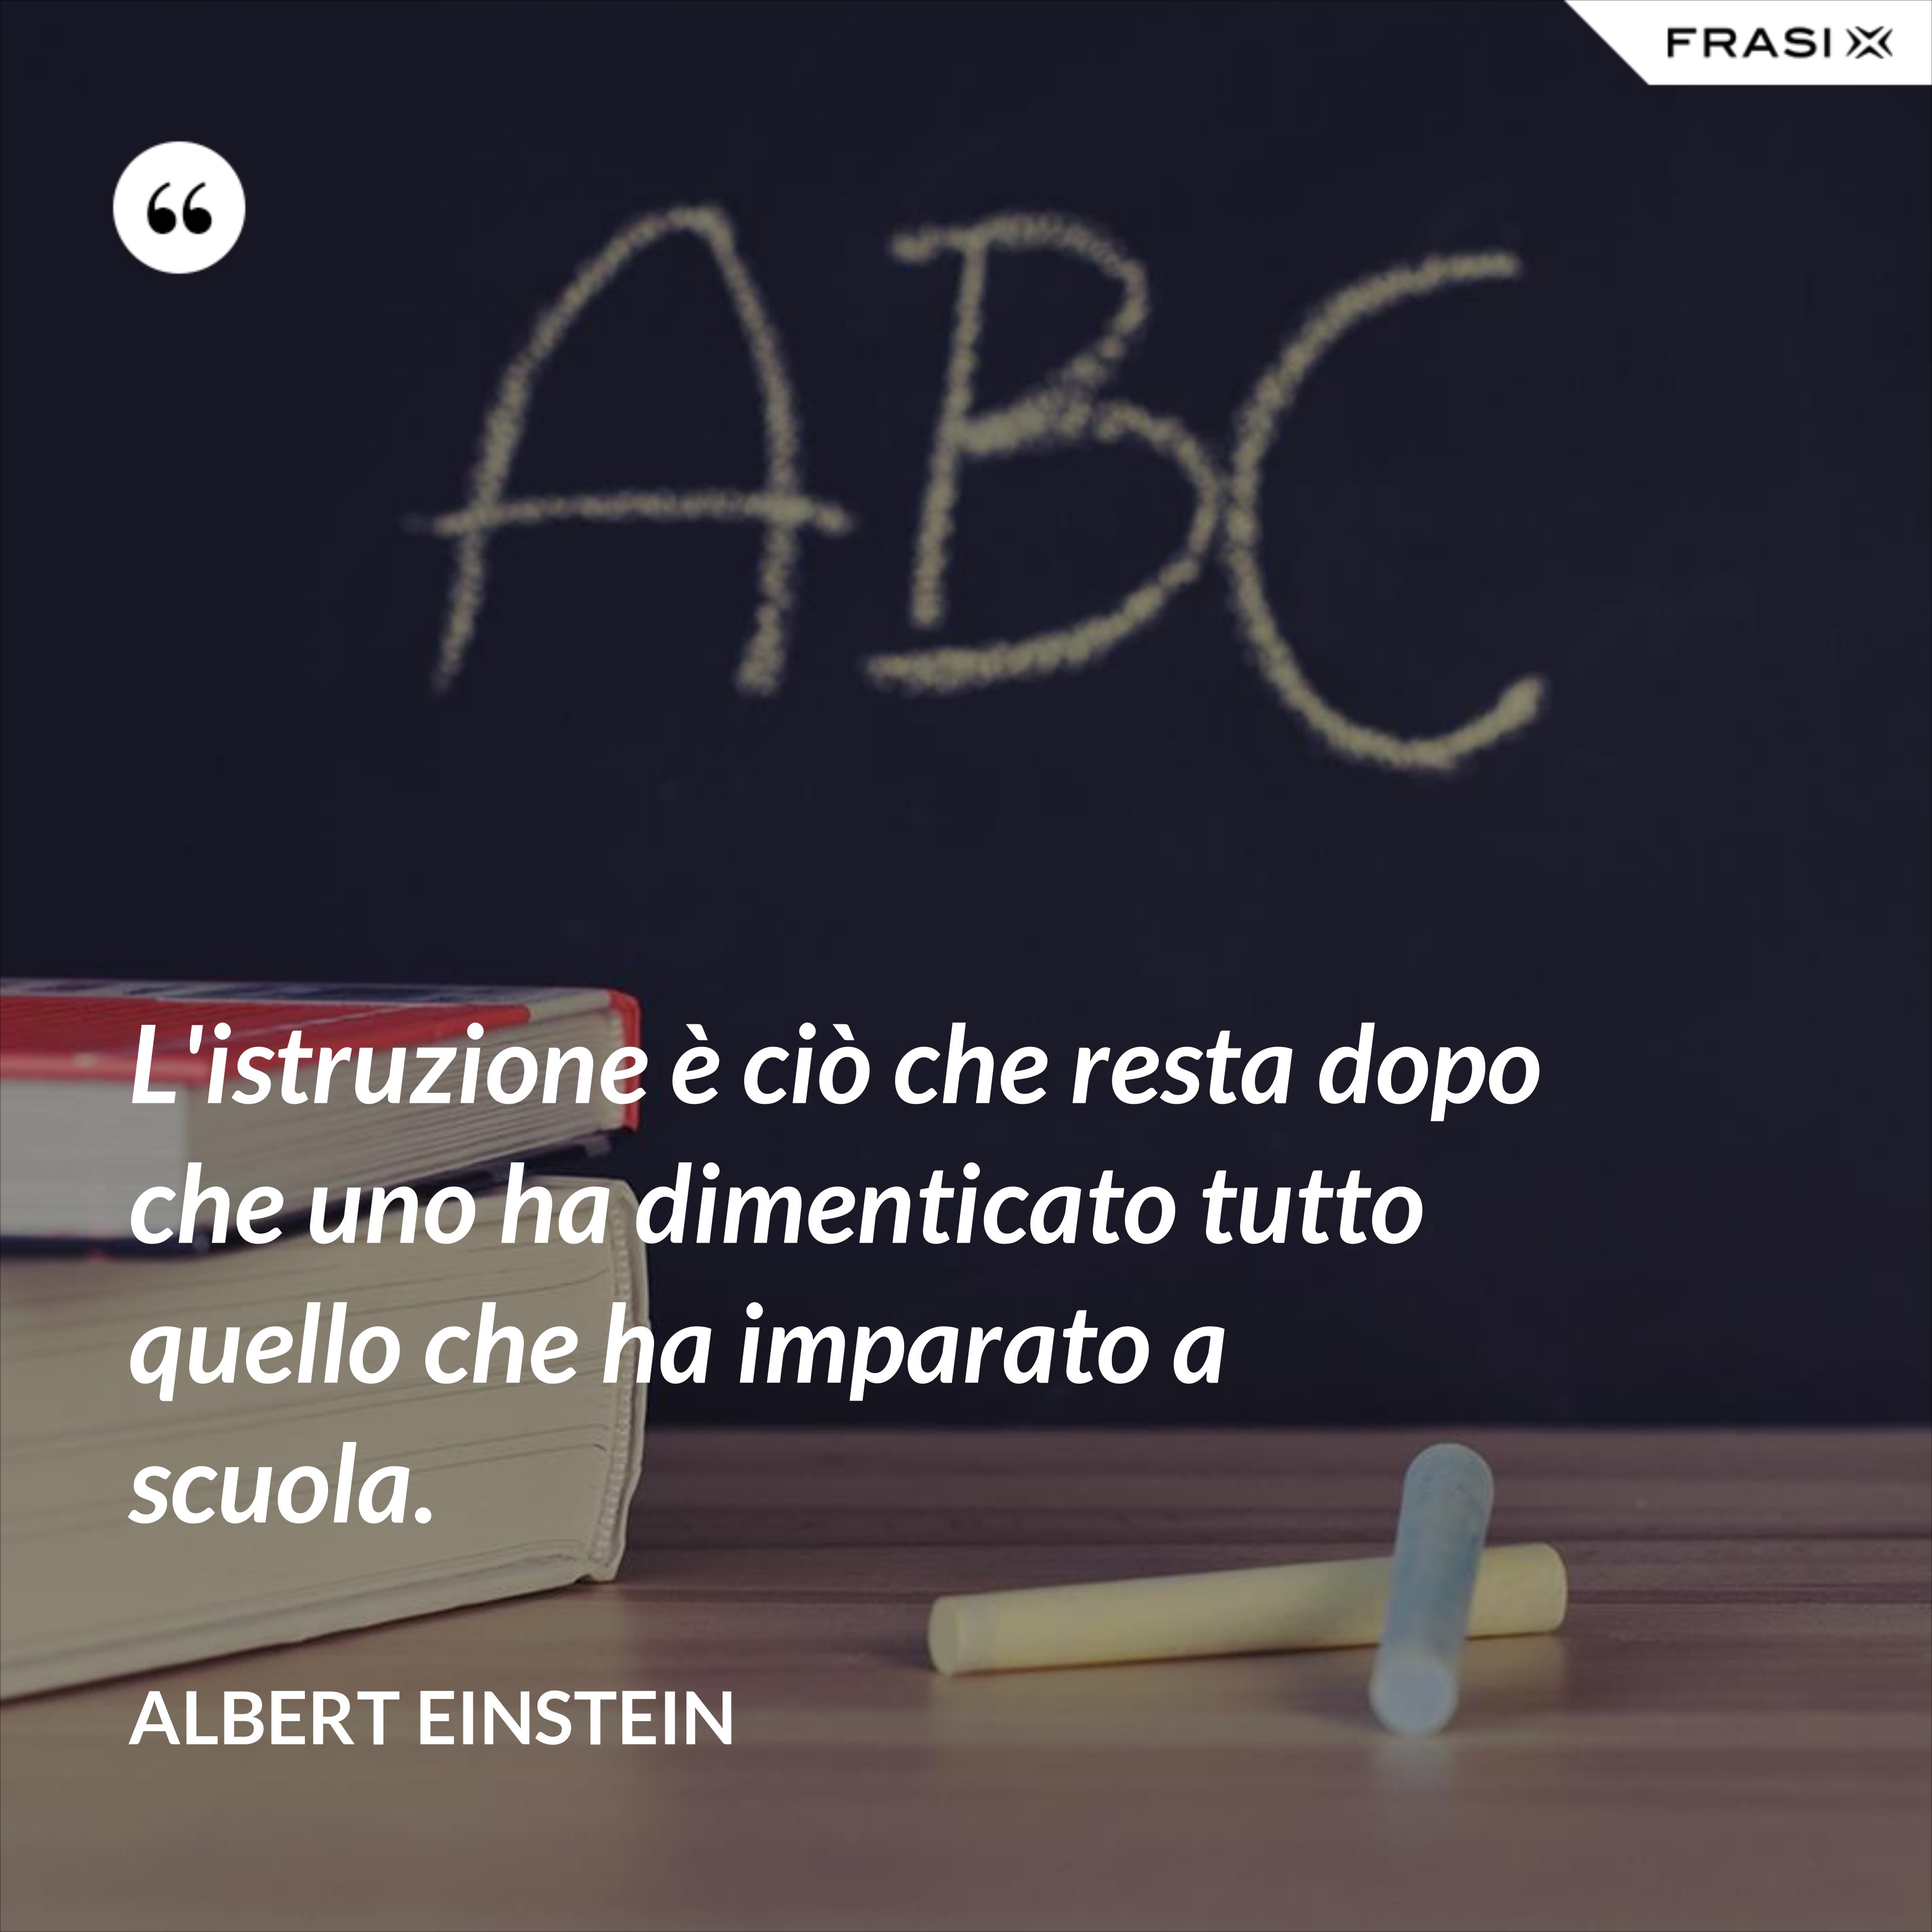 L'istruzione è ciò che resta dopo che uno ha dimenticato tutto quello che ha imparato a scuola. - Albert Einstein